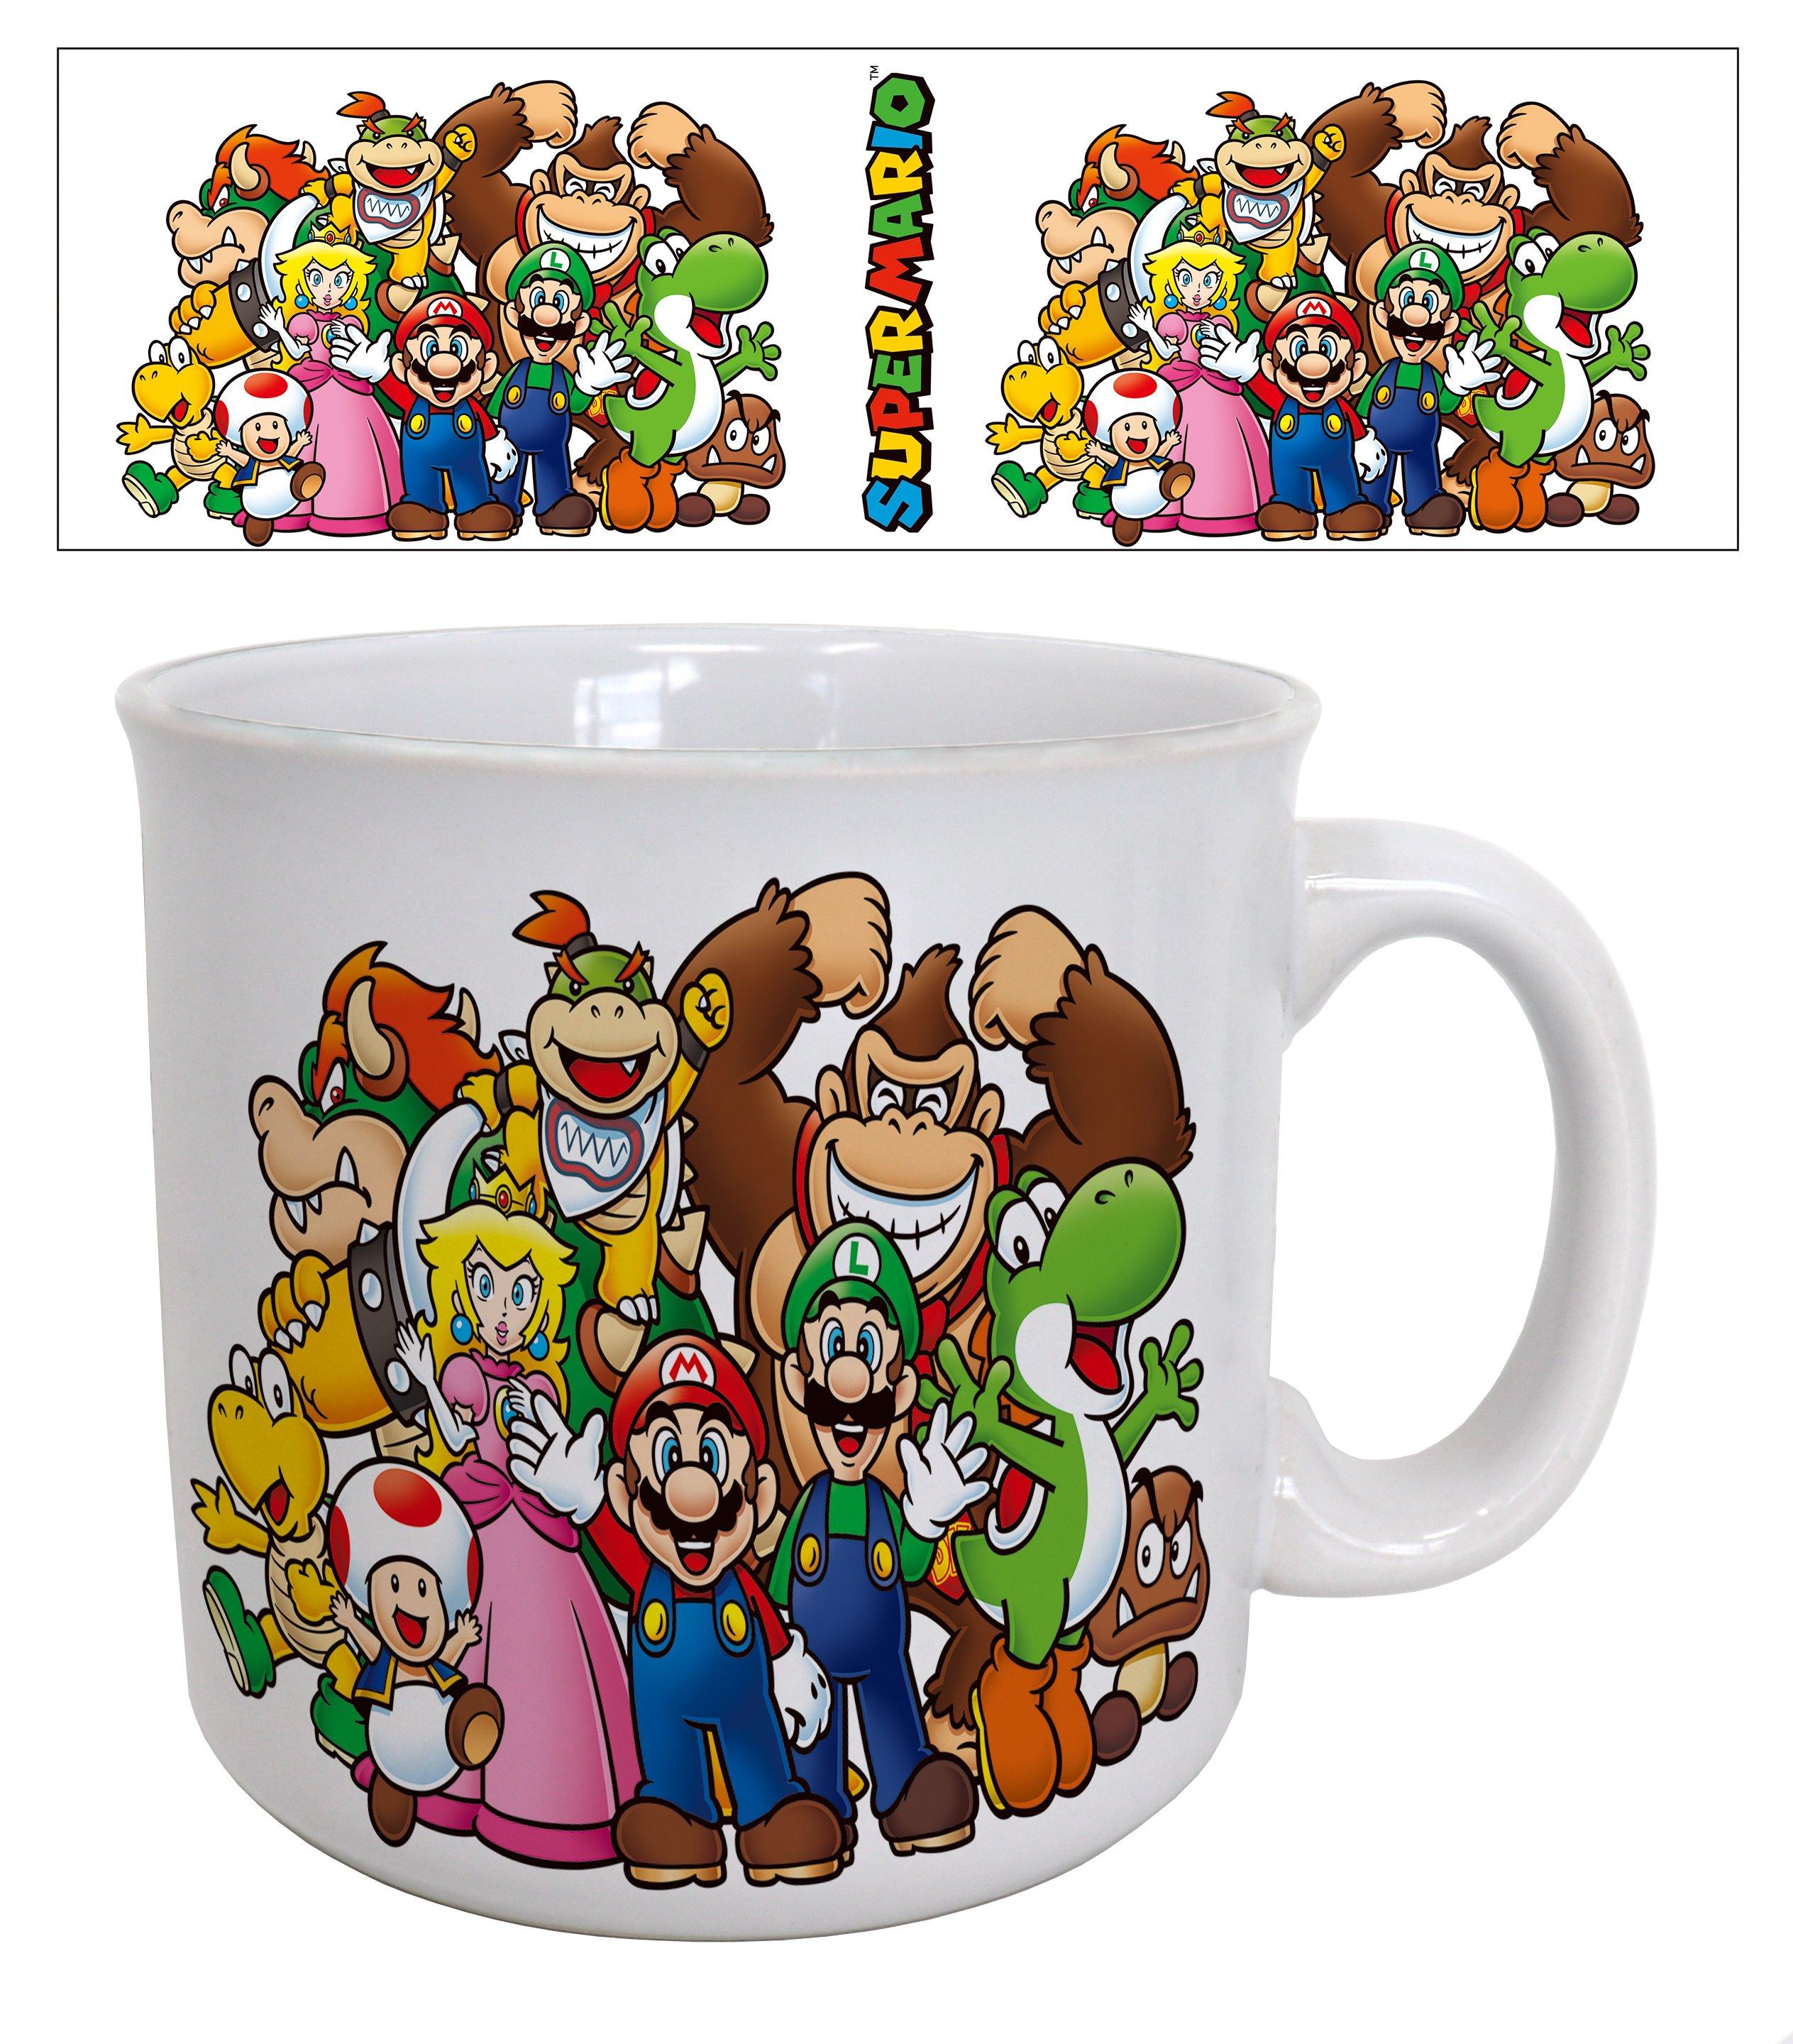 Super Mario - Mario and Friends 20oz Mug